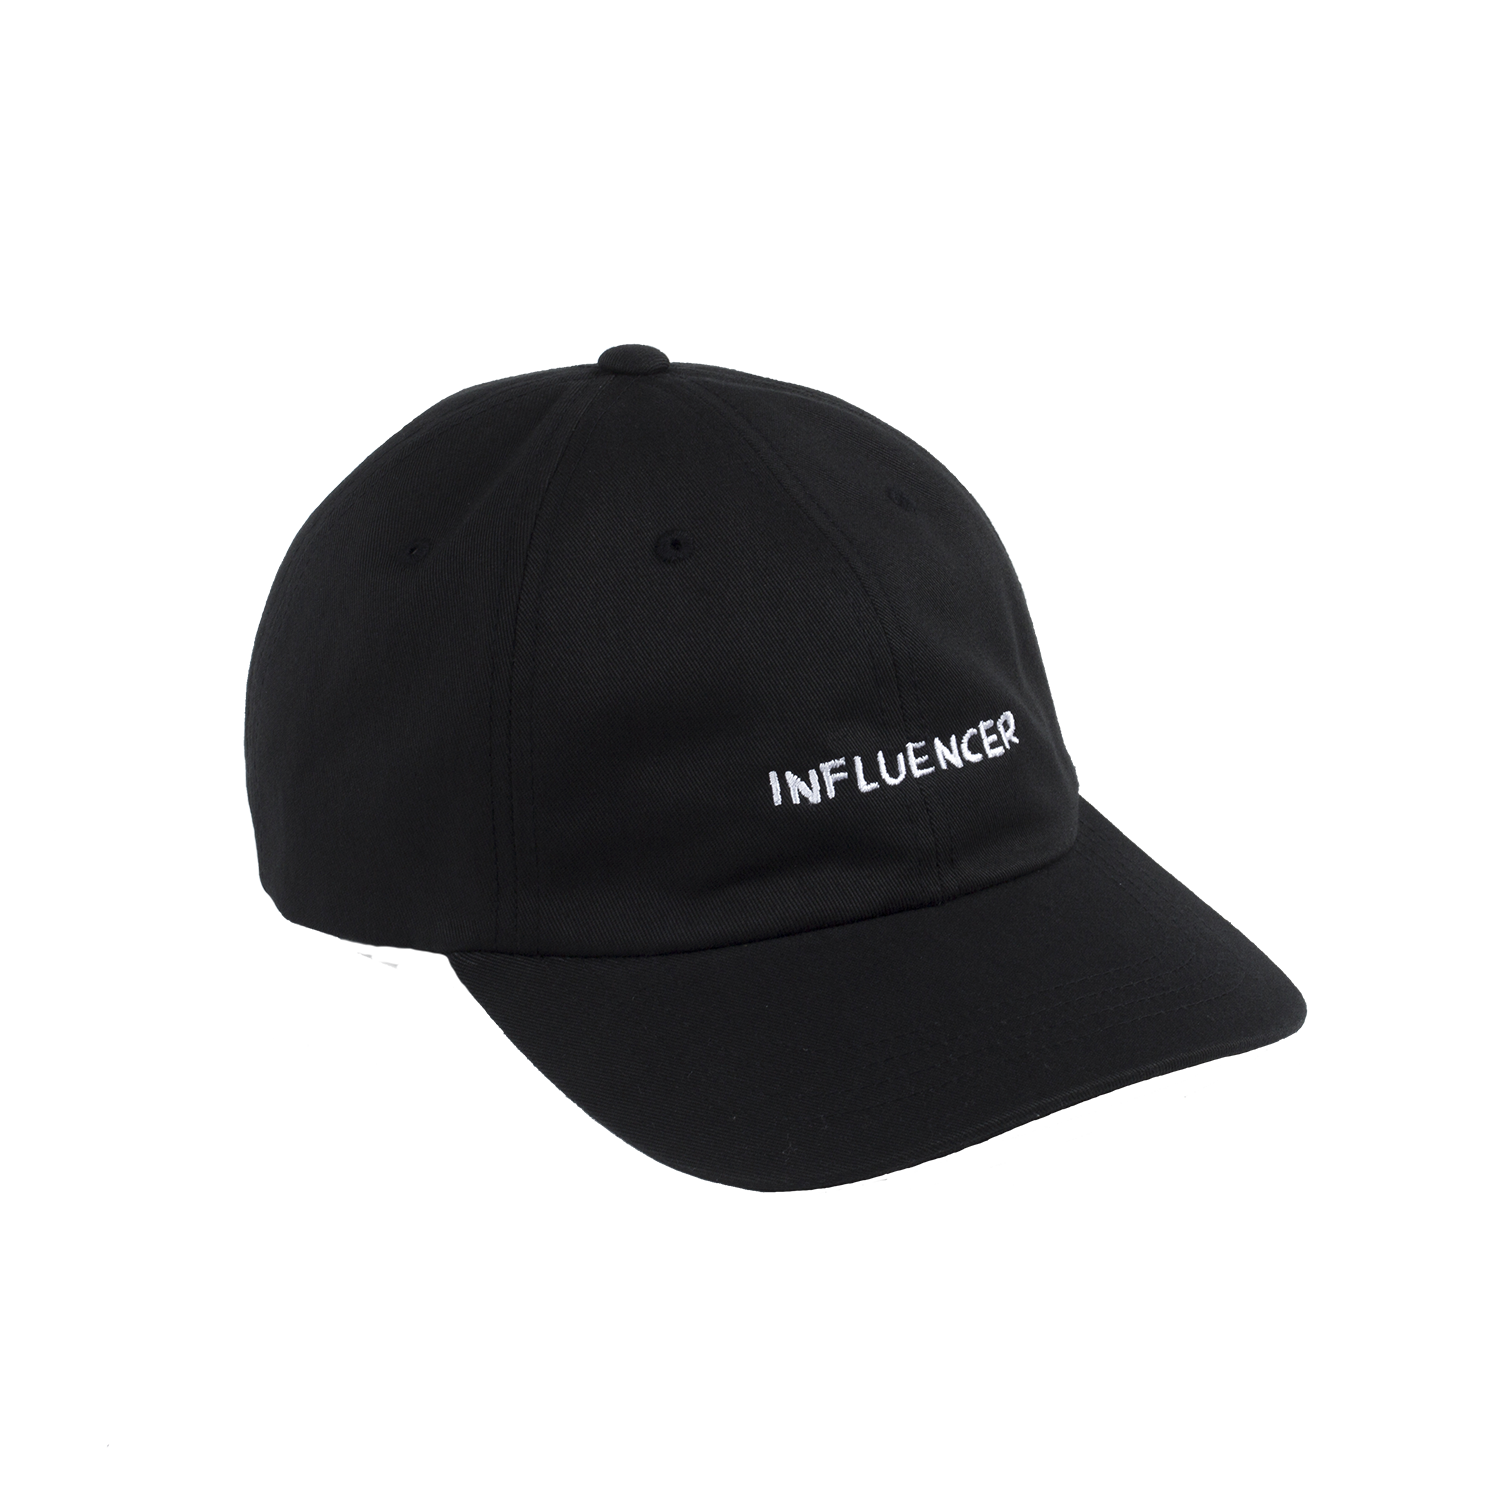 "influencer" dad hat